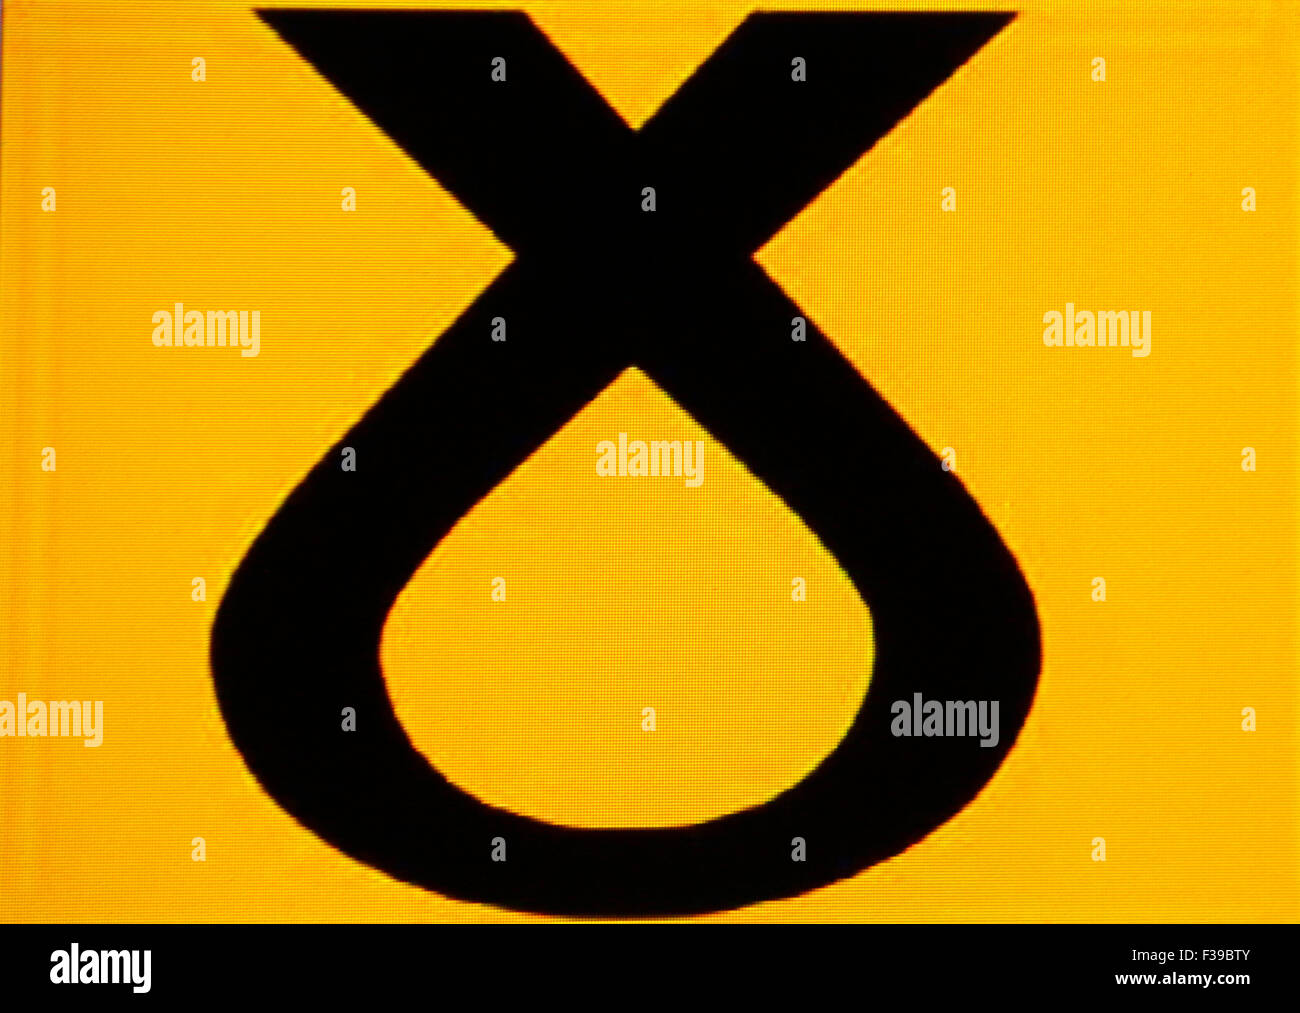 Logo der "SNP Scottish National Party" - Referendum äh sterben Unabhaengigkeit Schottlands am 18. September 2014. Stockfoto